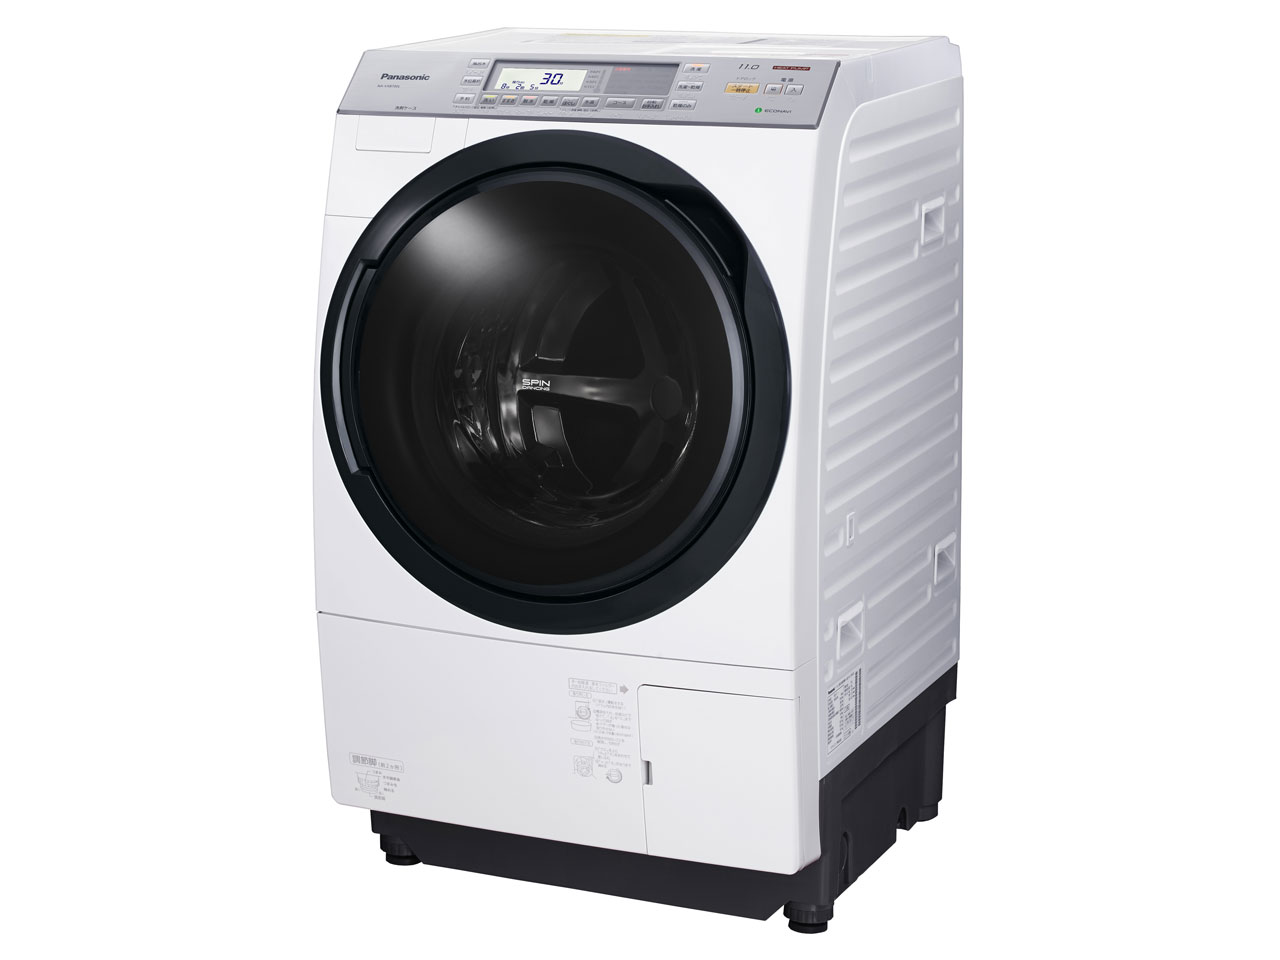 パナソニック NA-VX8700L-W ドラム式洗濯乾燥機(洗濯11.0kg/乾燥6.0kg・左開き) クリスタルホワイト